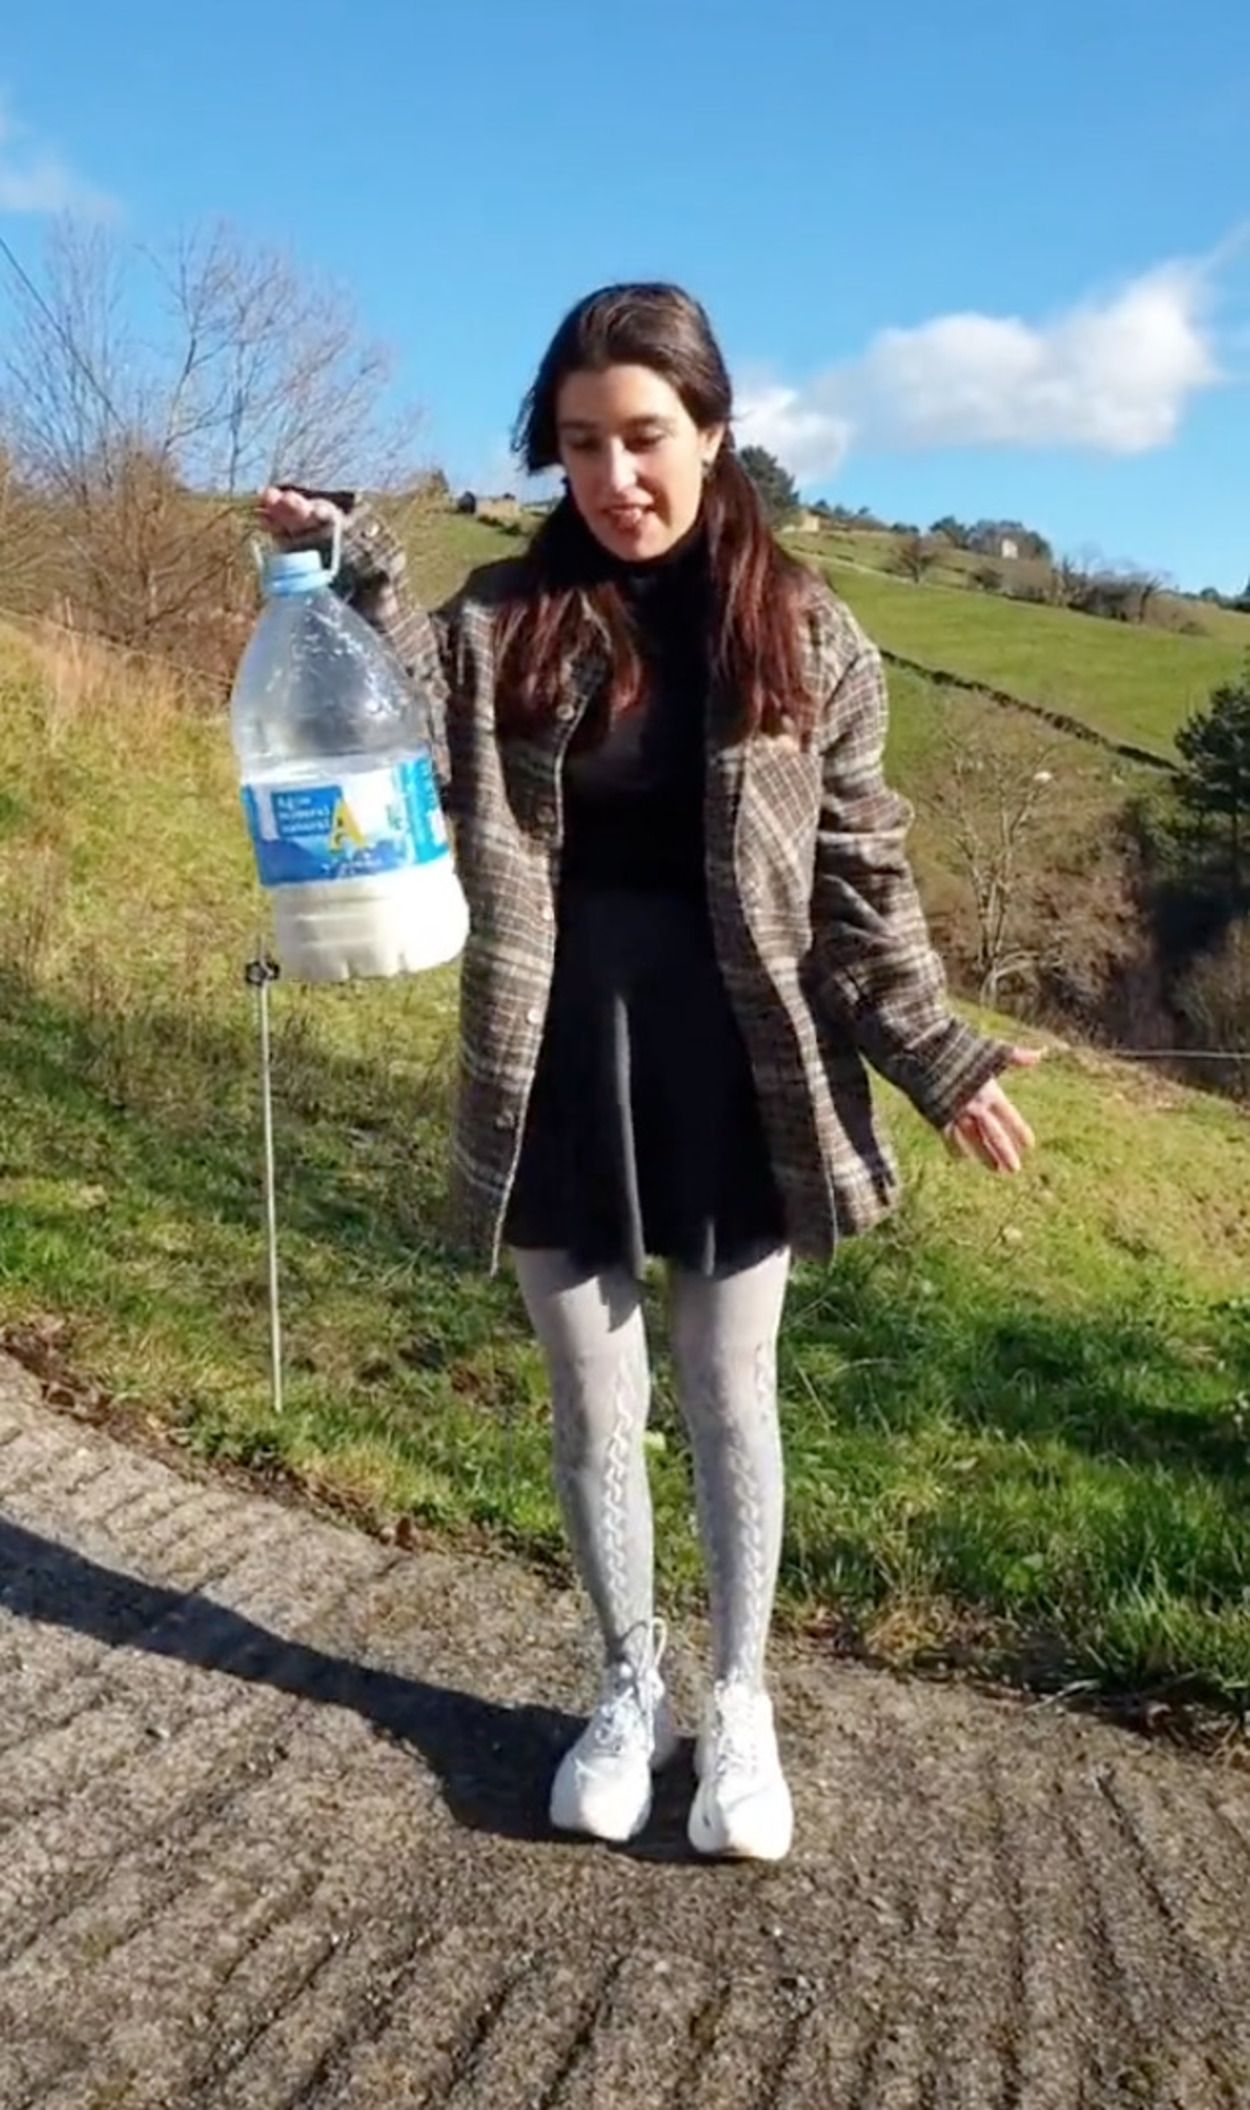 El polémico vídeo de una turista en Asturias: "Me han dado leche de una vaca recién exprimida"